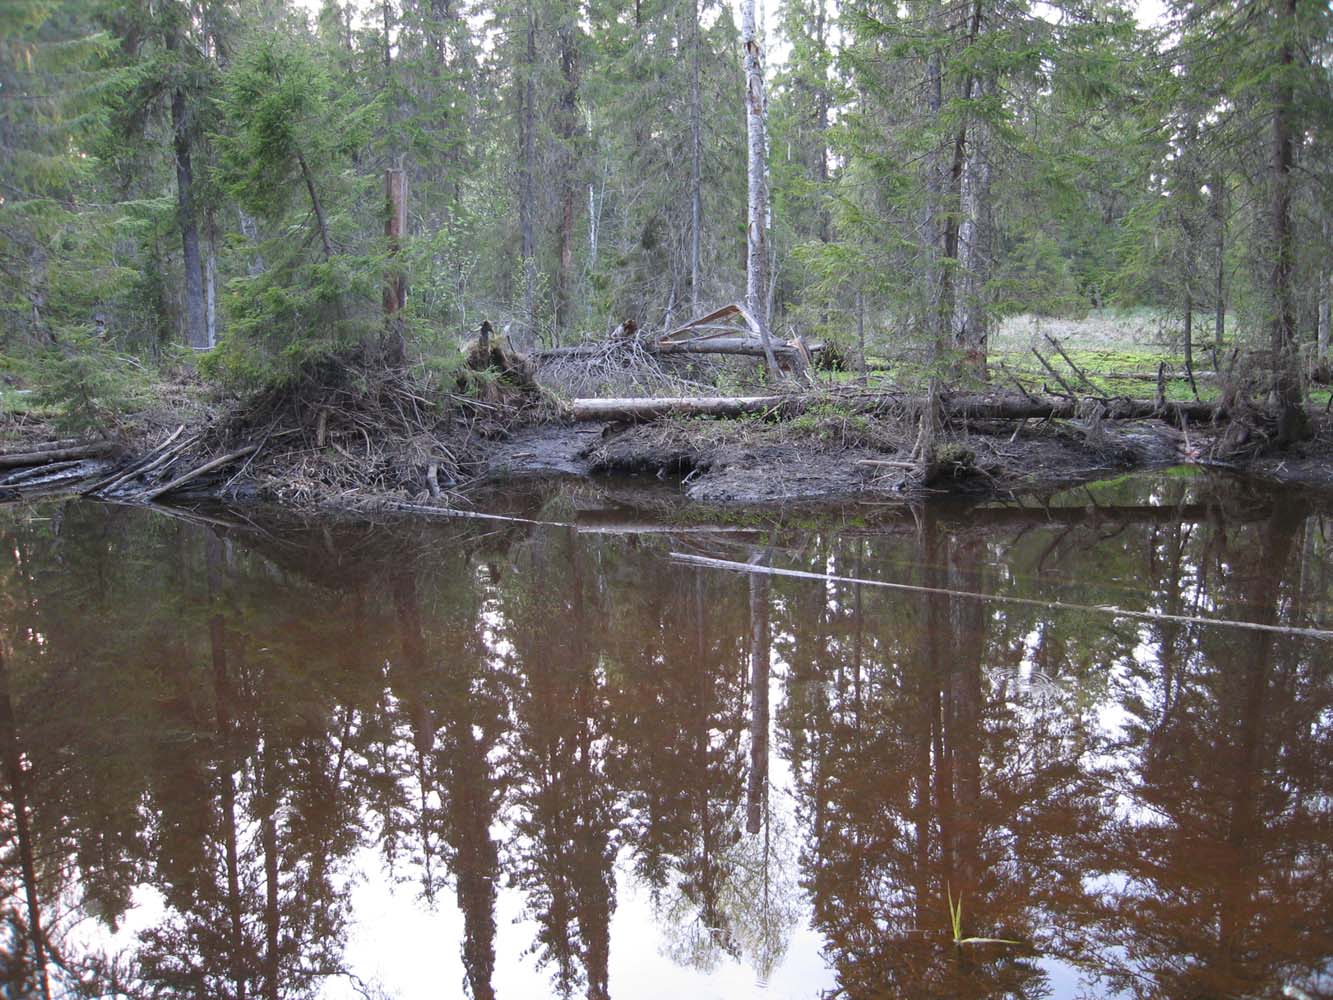 Заповедник "Кологривский лес", изображение ландшафта.